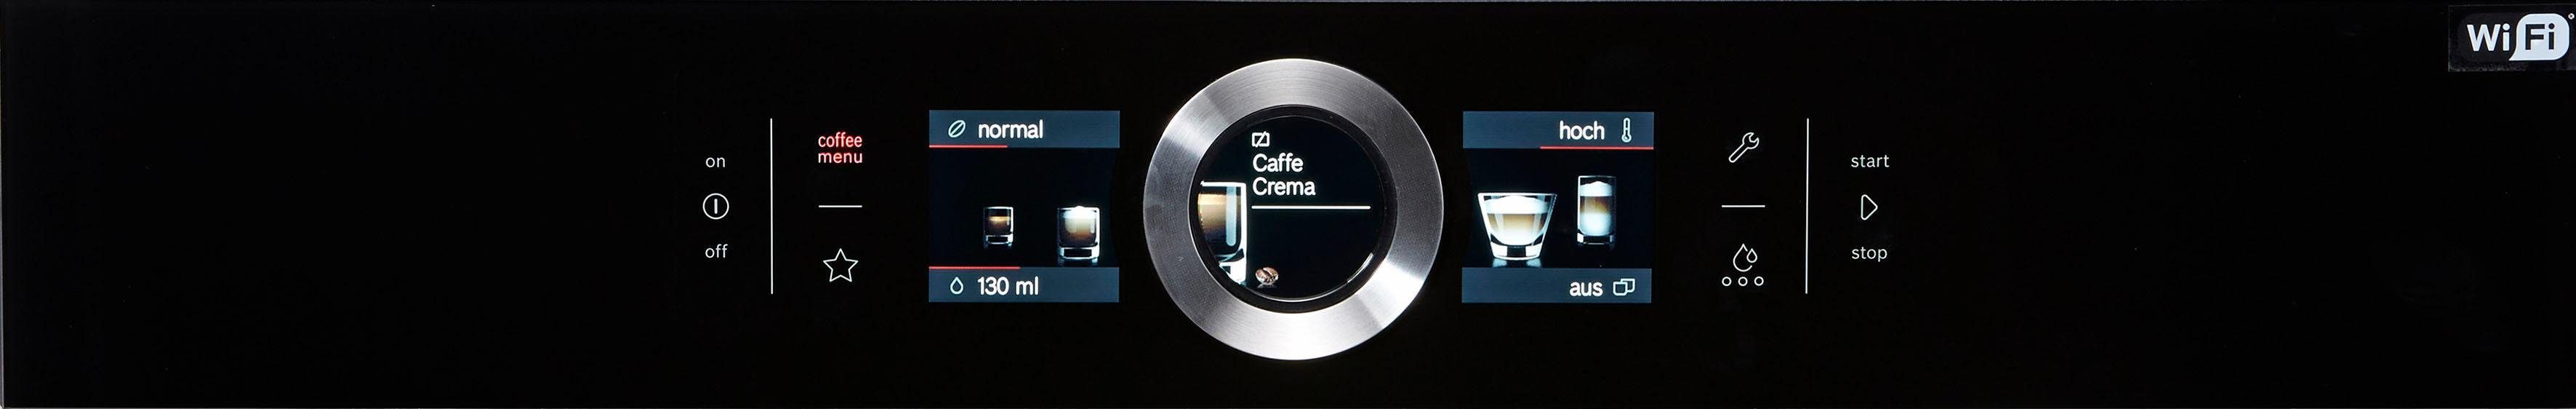 Einbau-Kaffeevollautomat CTL636EB6 BOSCH